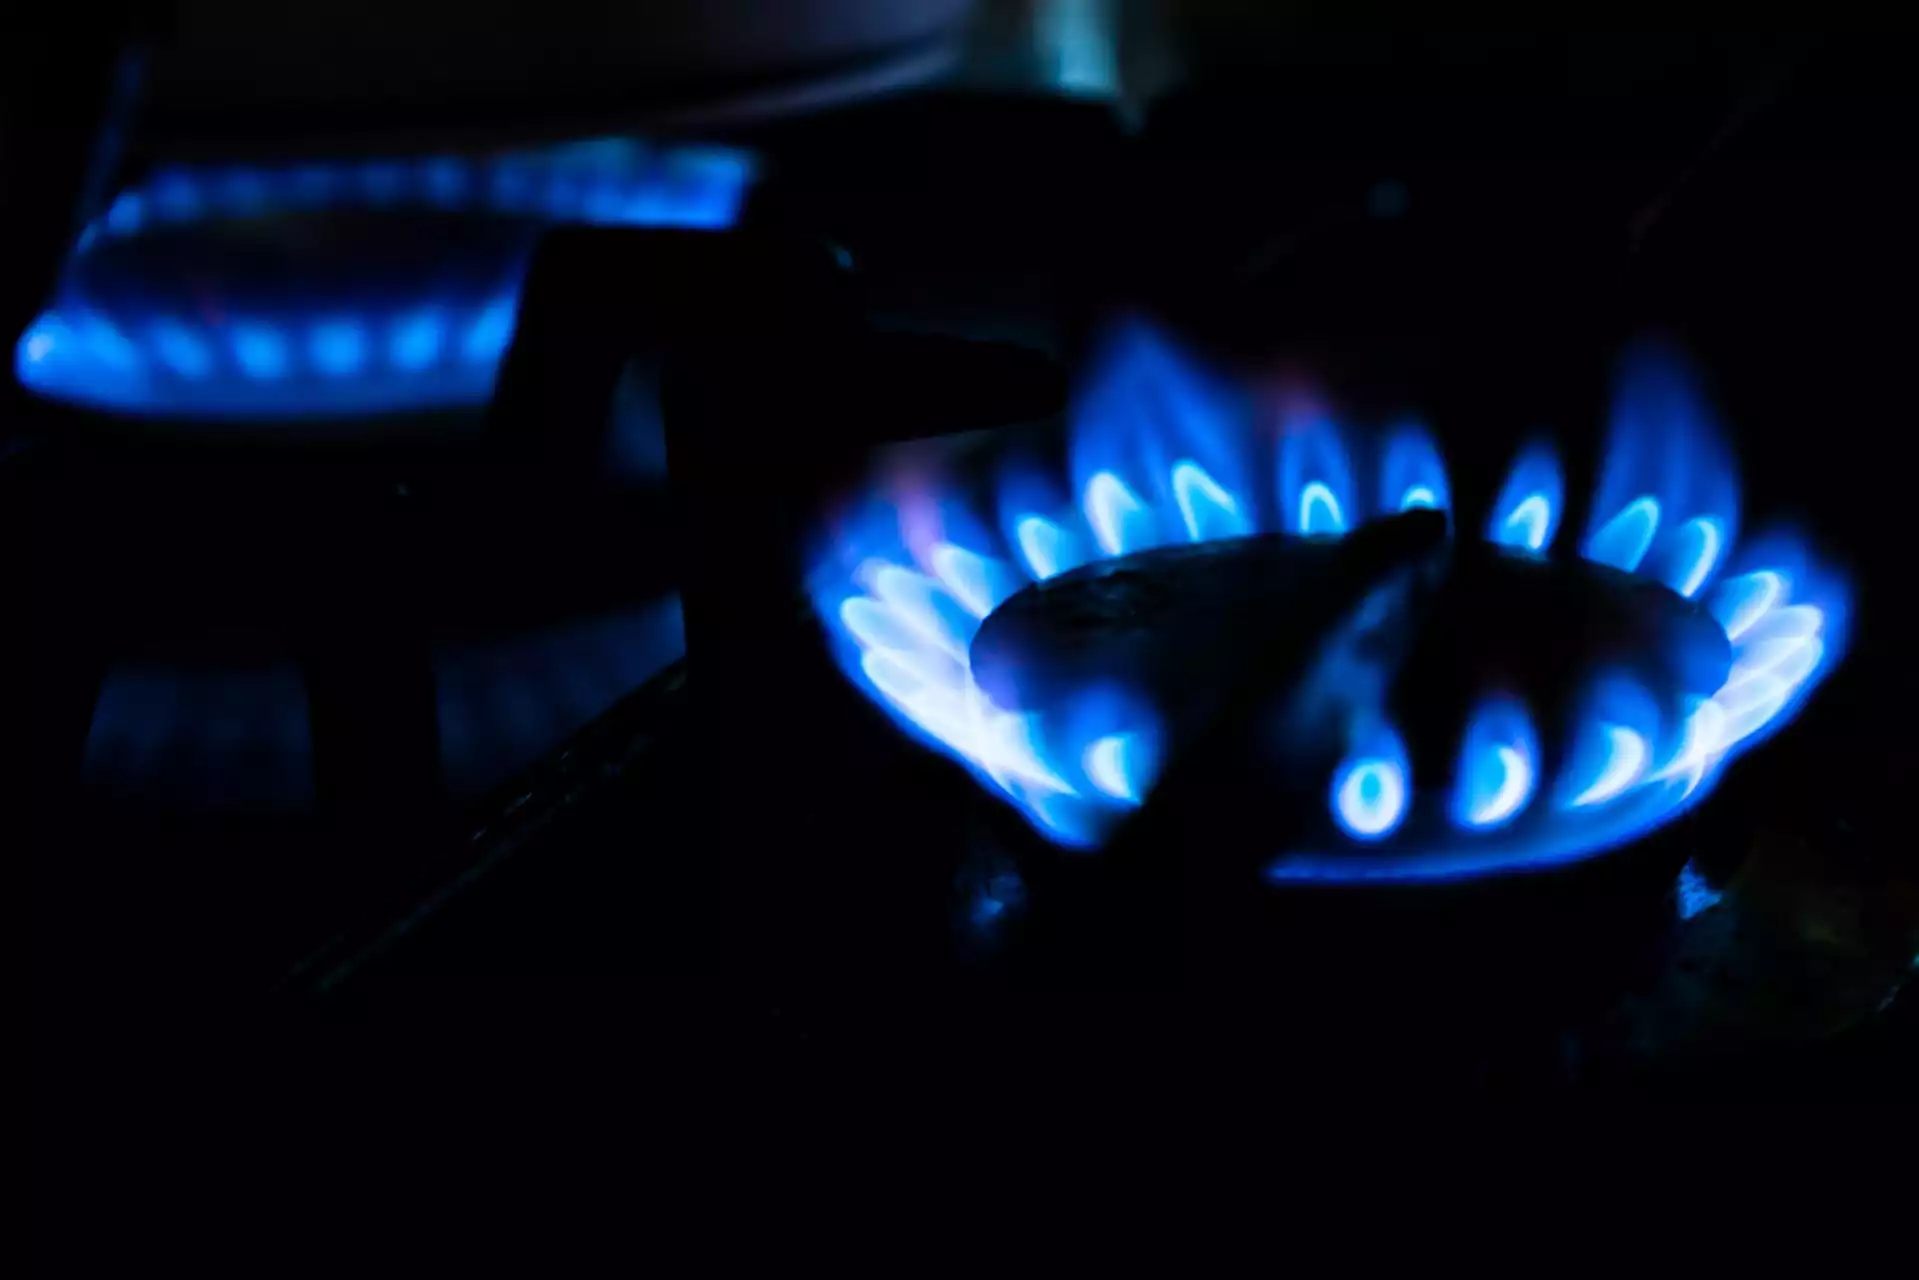 Gas sparen - Was tun gegen Inflation